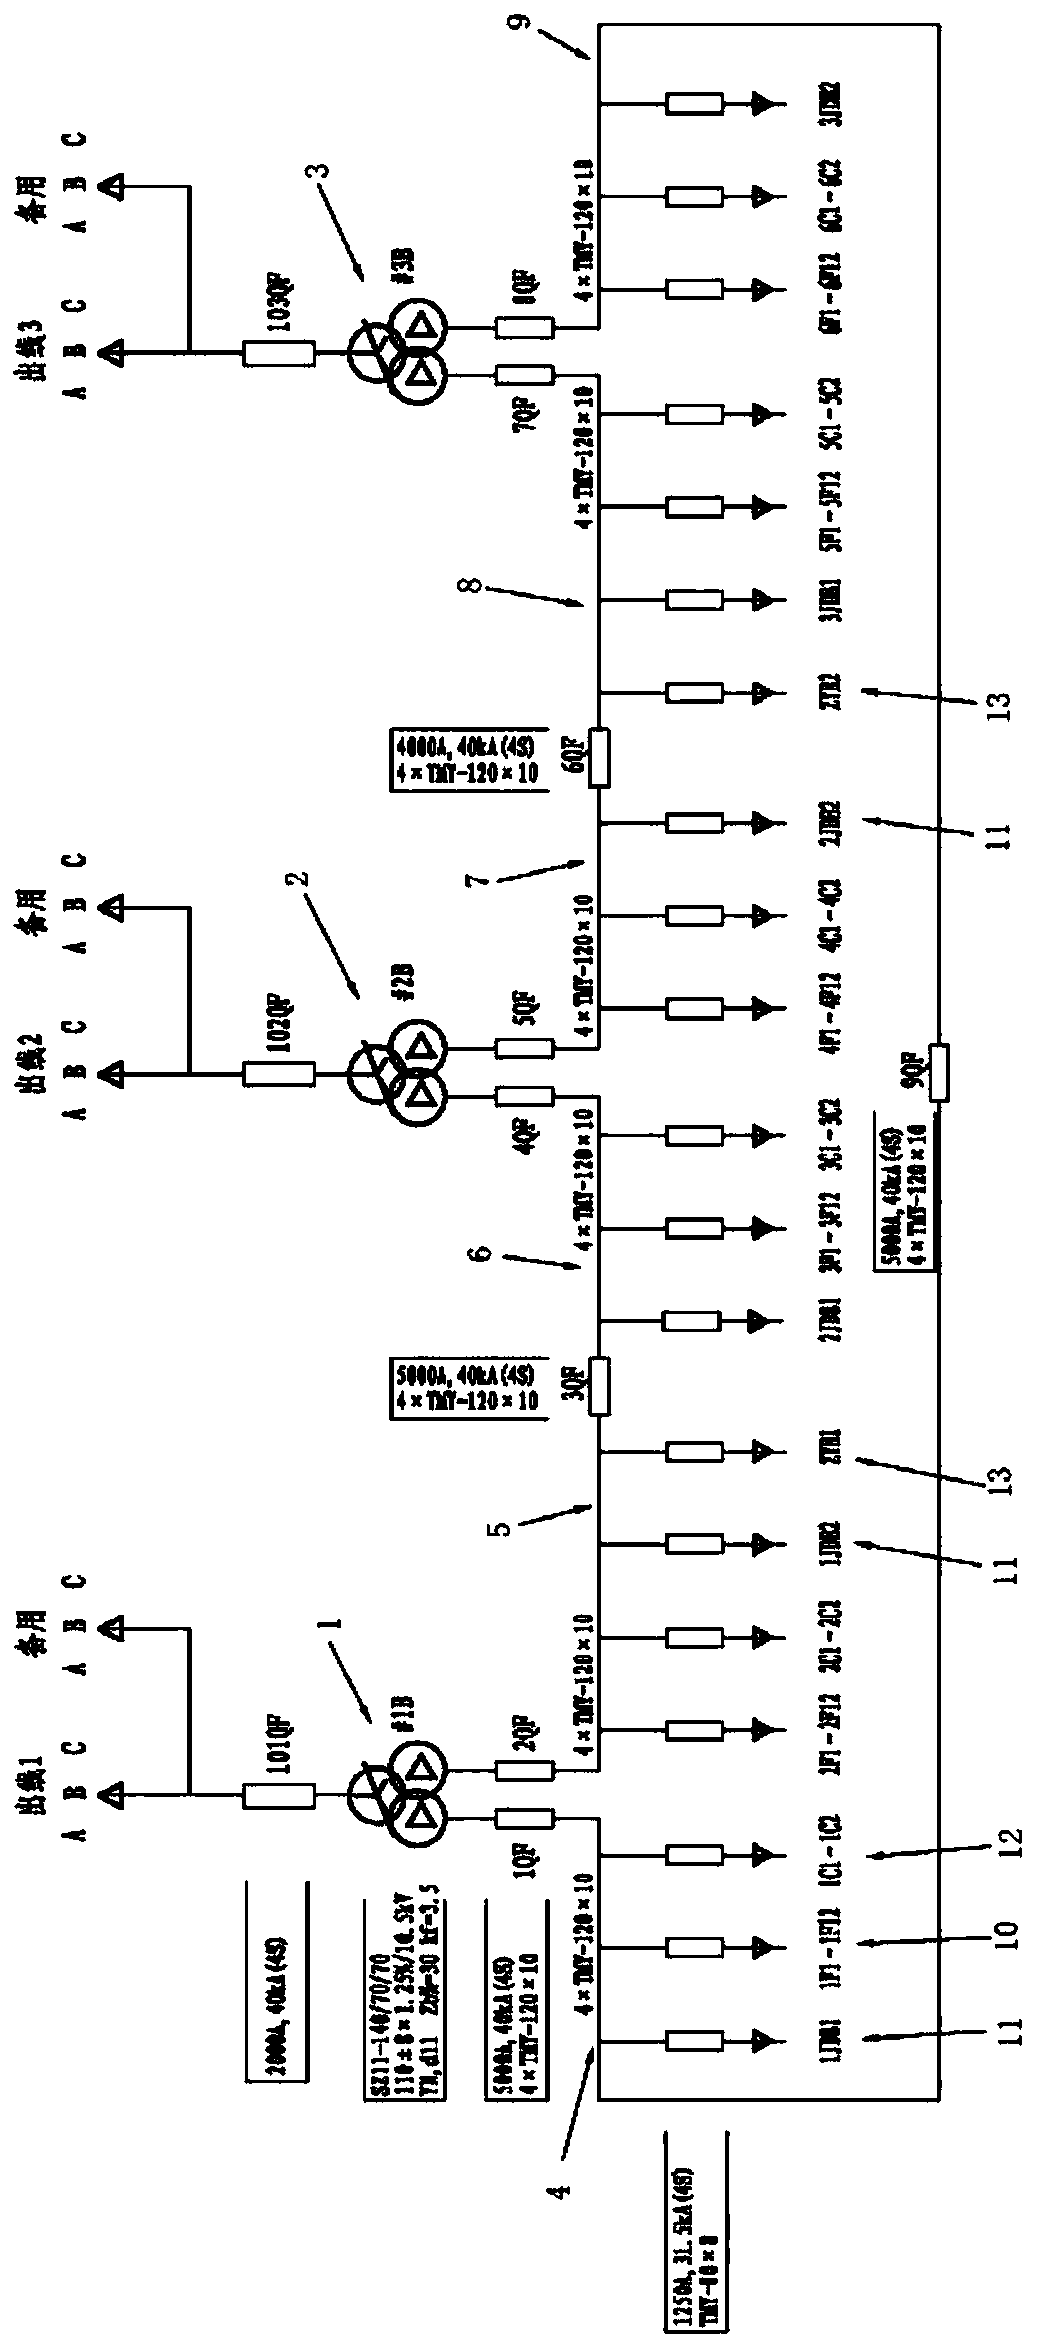 110kV transformer substation main wiring structure using split transformer